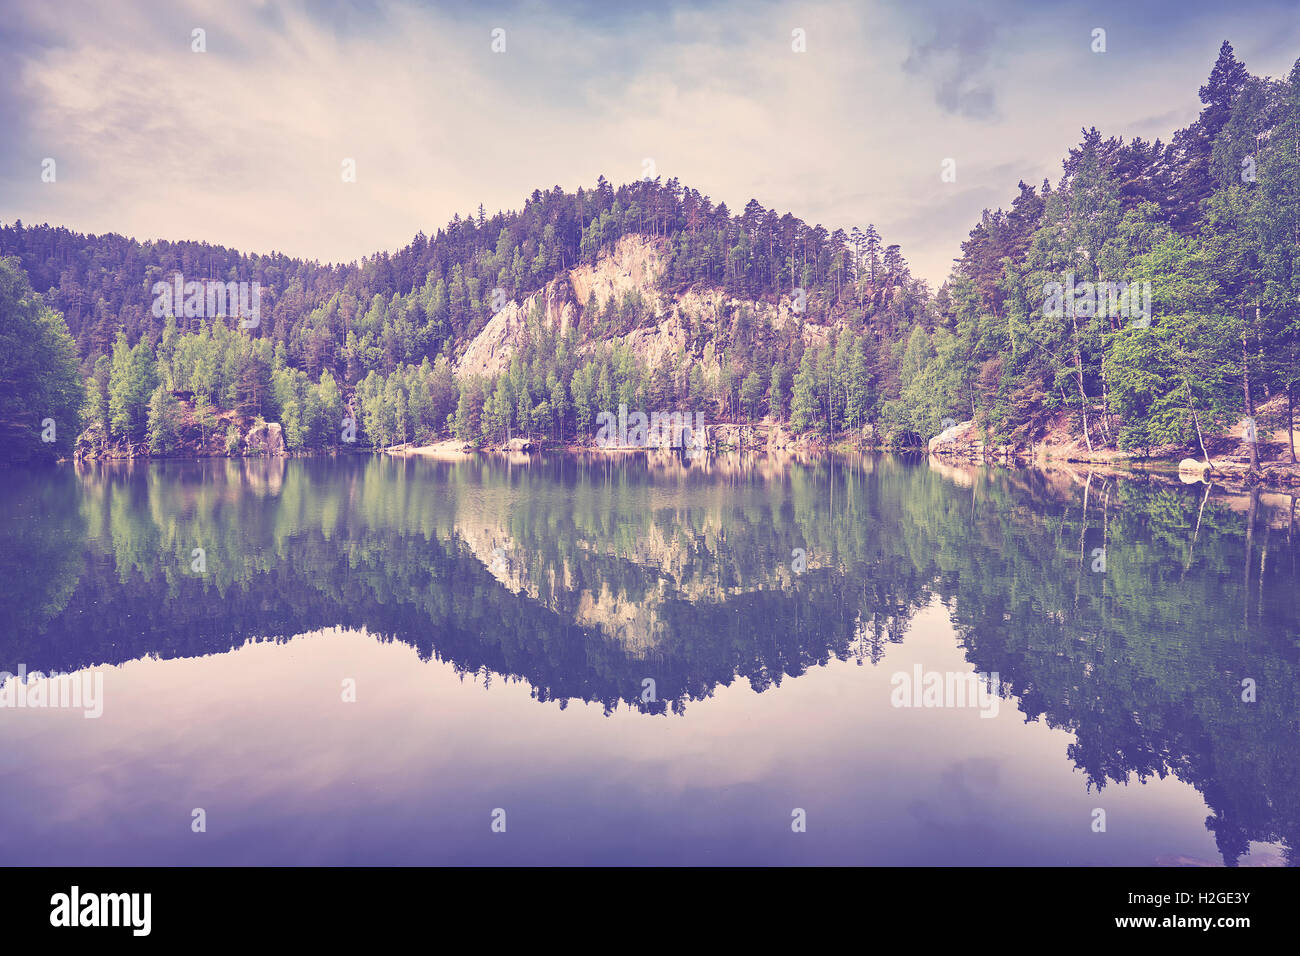 Vintage getönten ruhigen Bergsee mit Spiegelung im ruhigen Wasser. Stockfoto